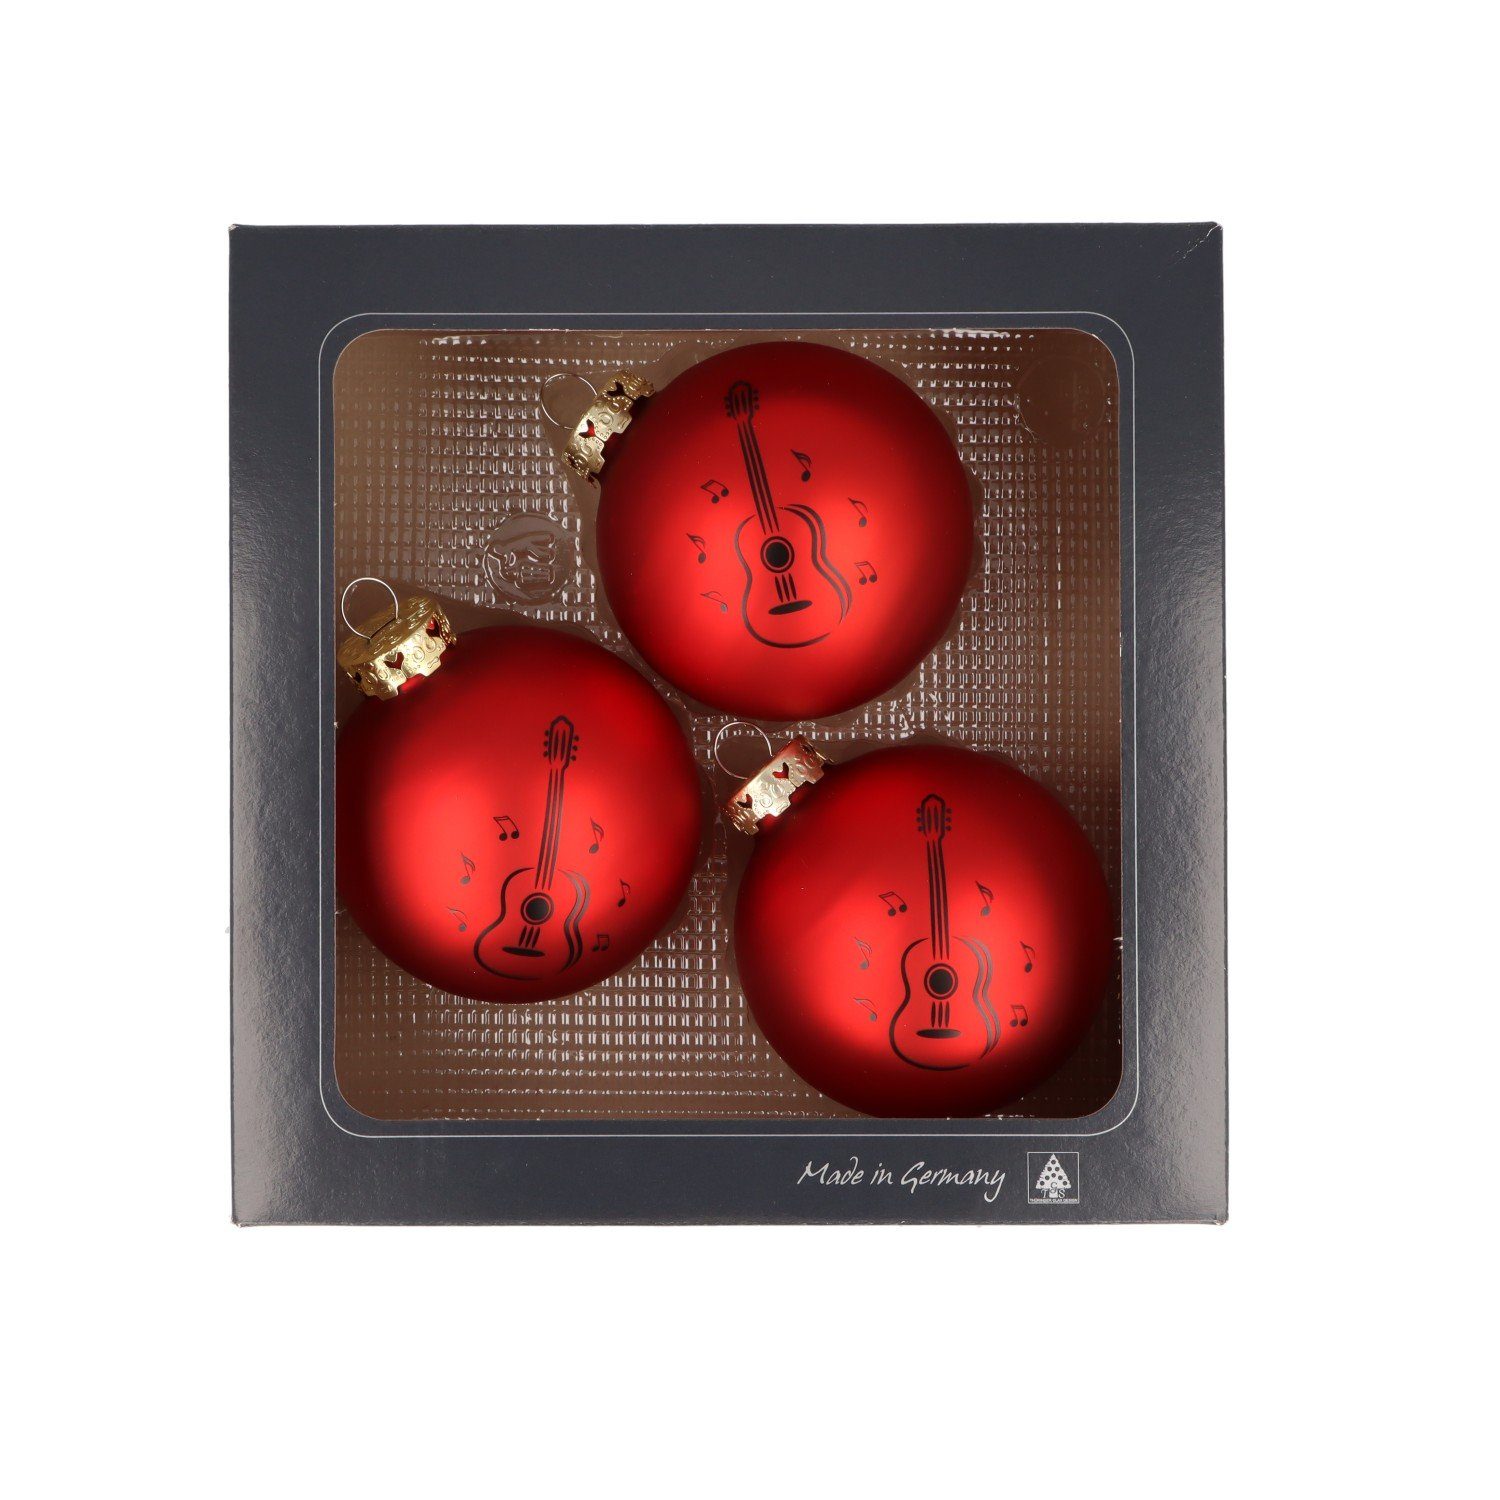 Glas mit Weihnachtsbaumkugel, schwarzem Konzertgitarre-Druck, 3er-Set Musikboutique aus rot Farbe